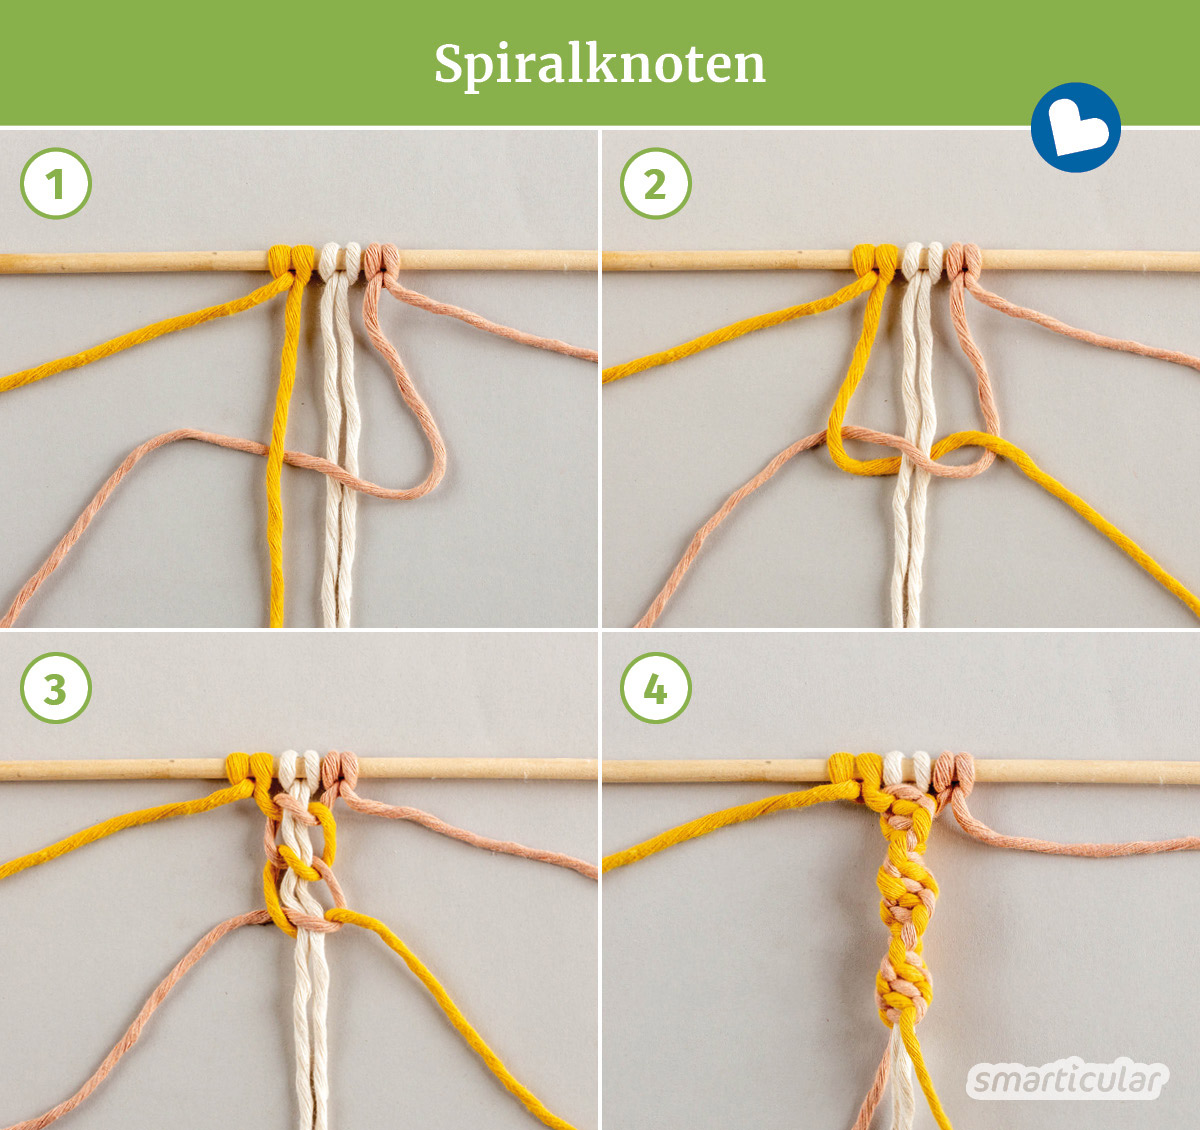 Makramee-Knoten werden aus rein natürlichen Materialien geknüpft. Die wichtigsten Knoten lernst du hier in dieser einfachen Makramee-Anleitung für Anfänger!